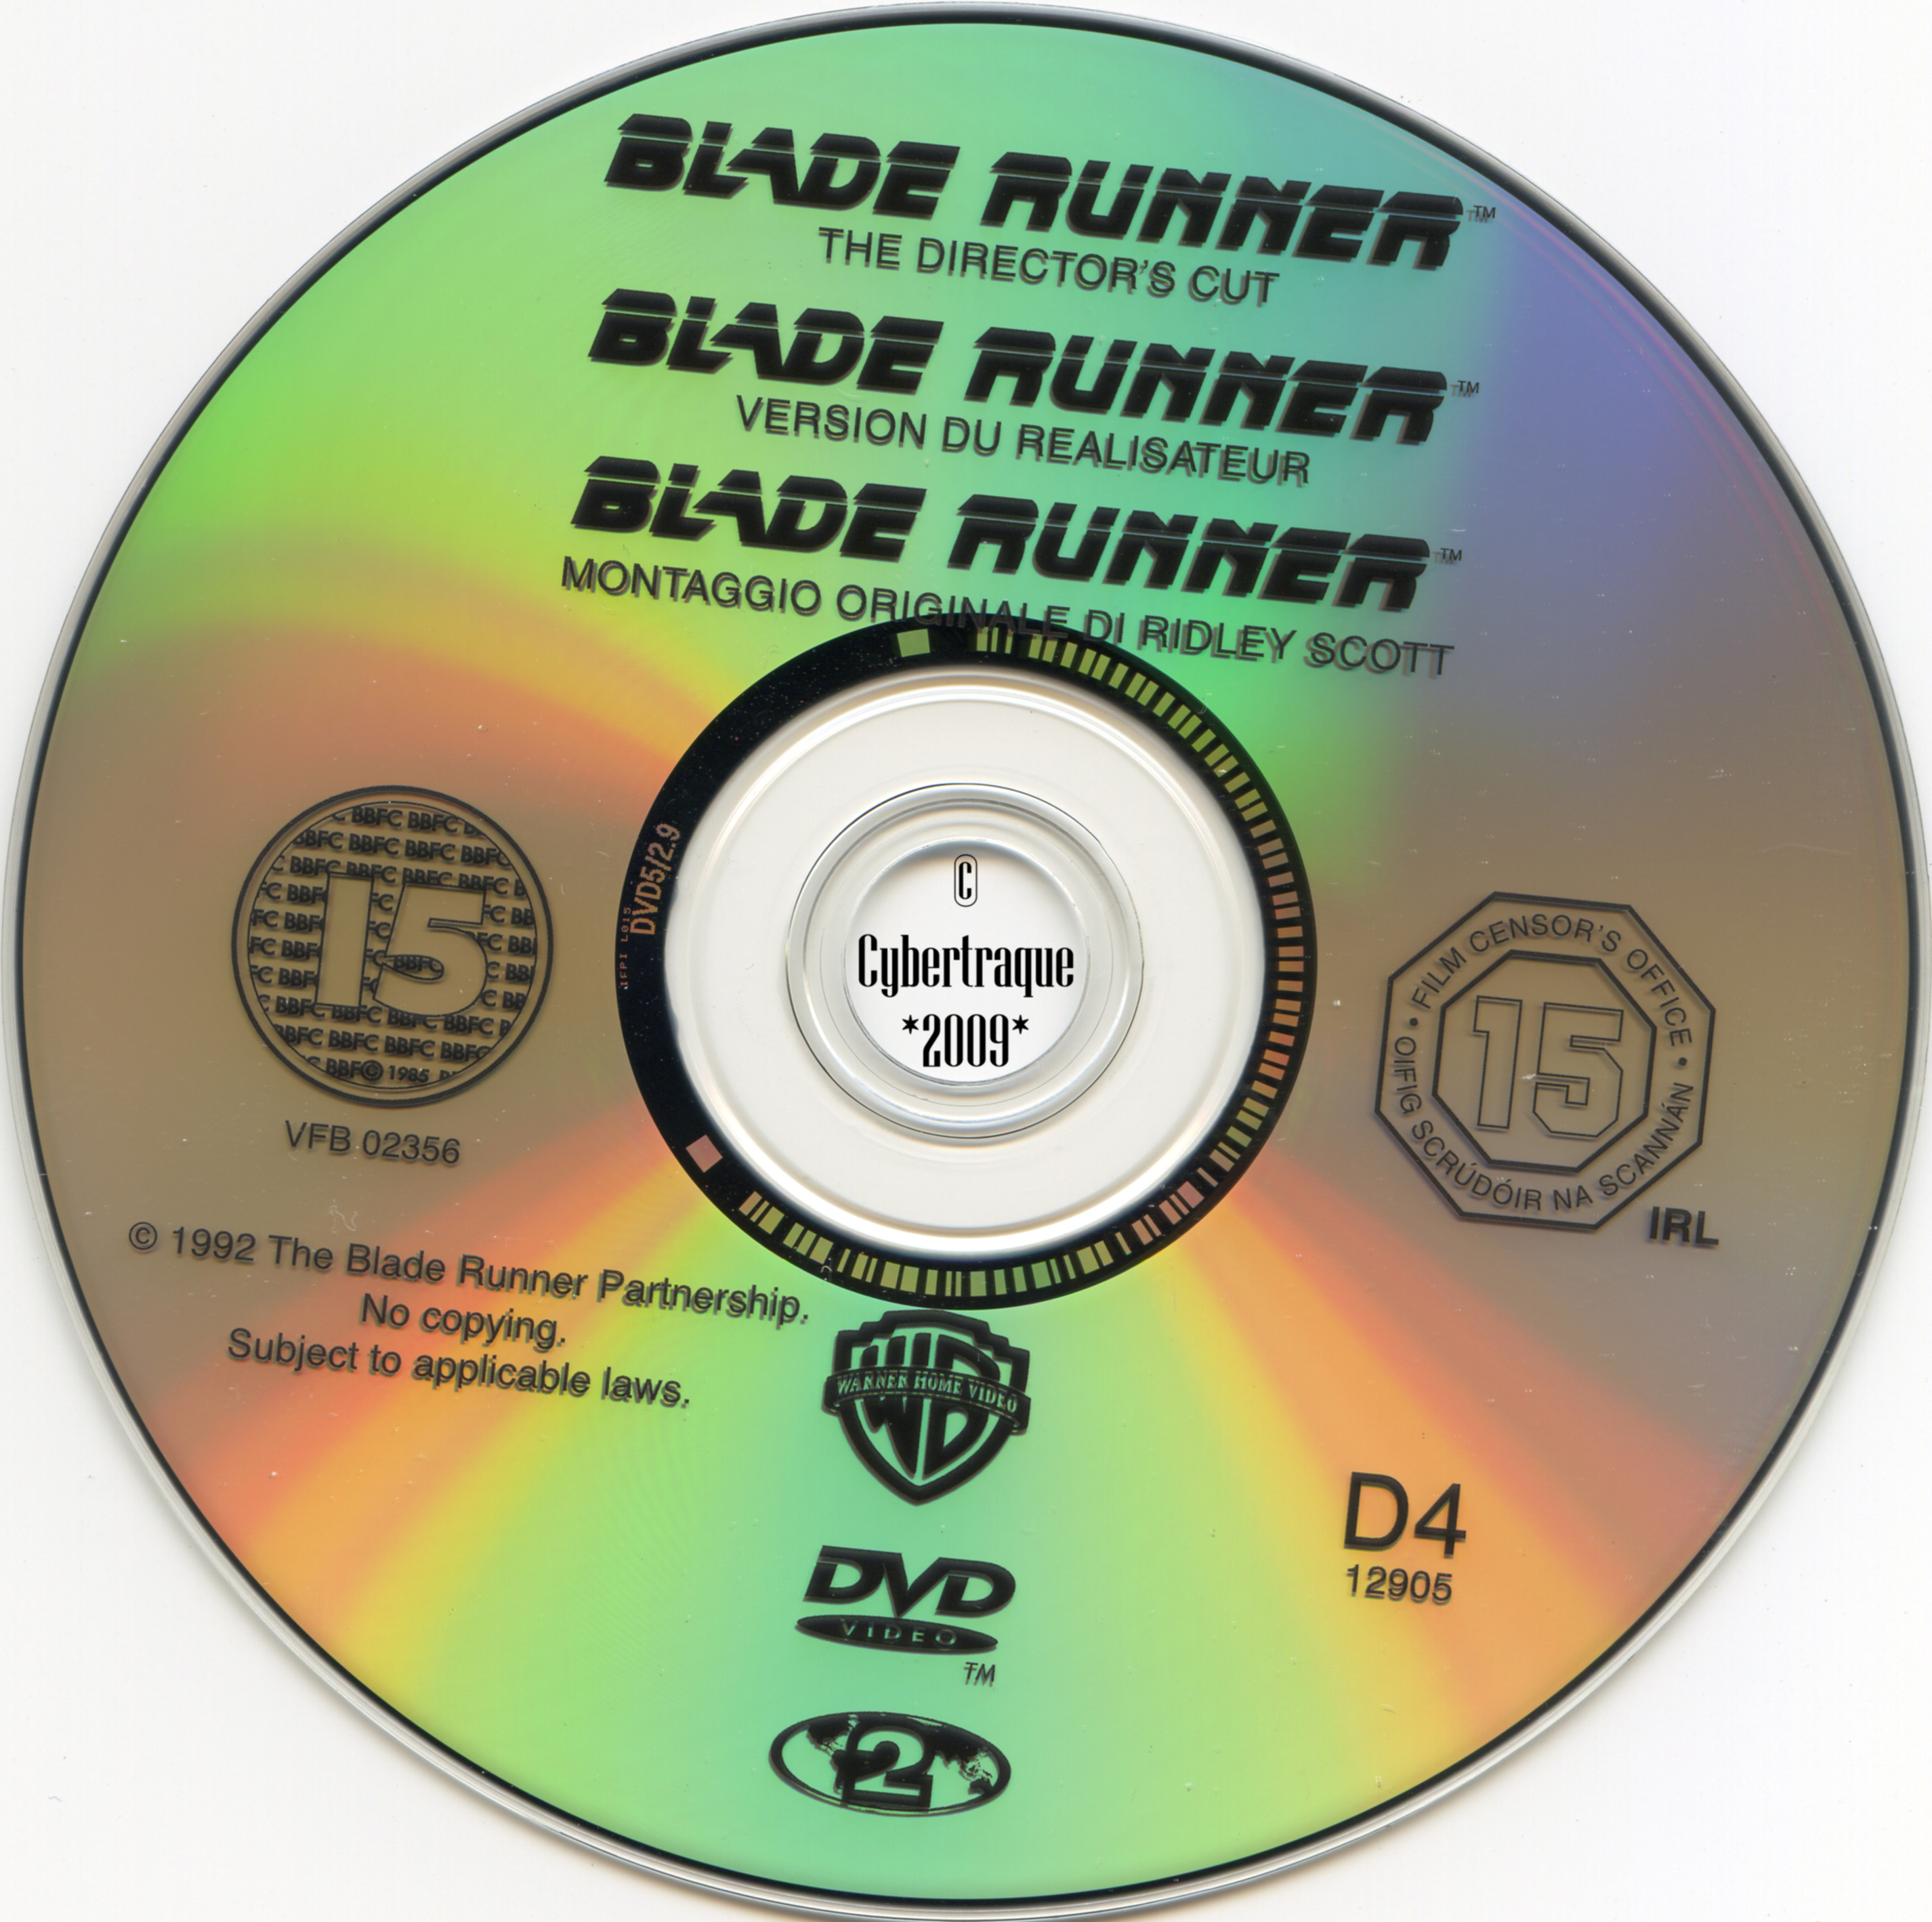 Blade runner v3